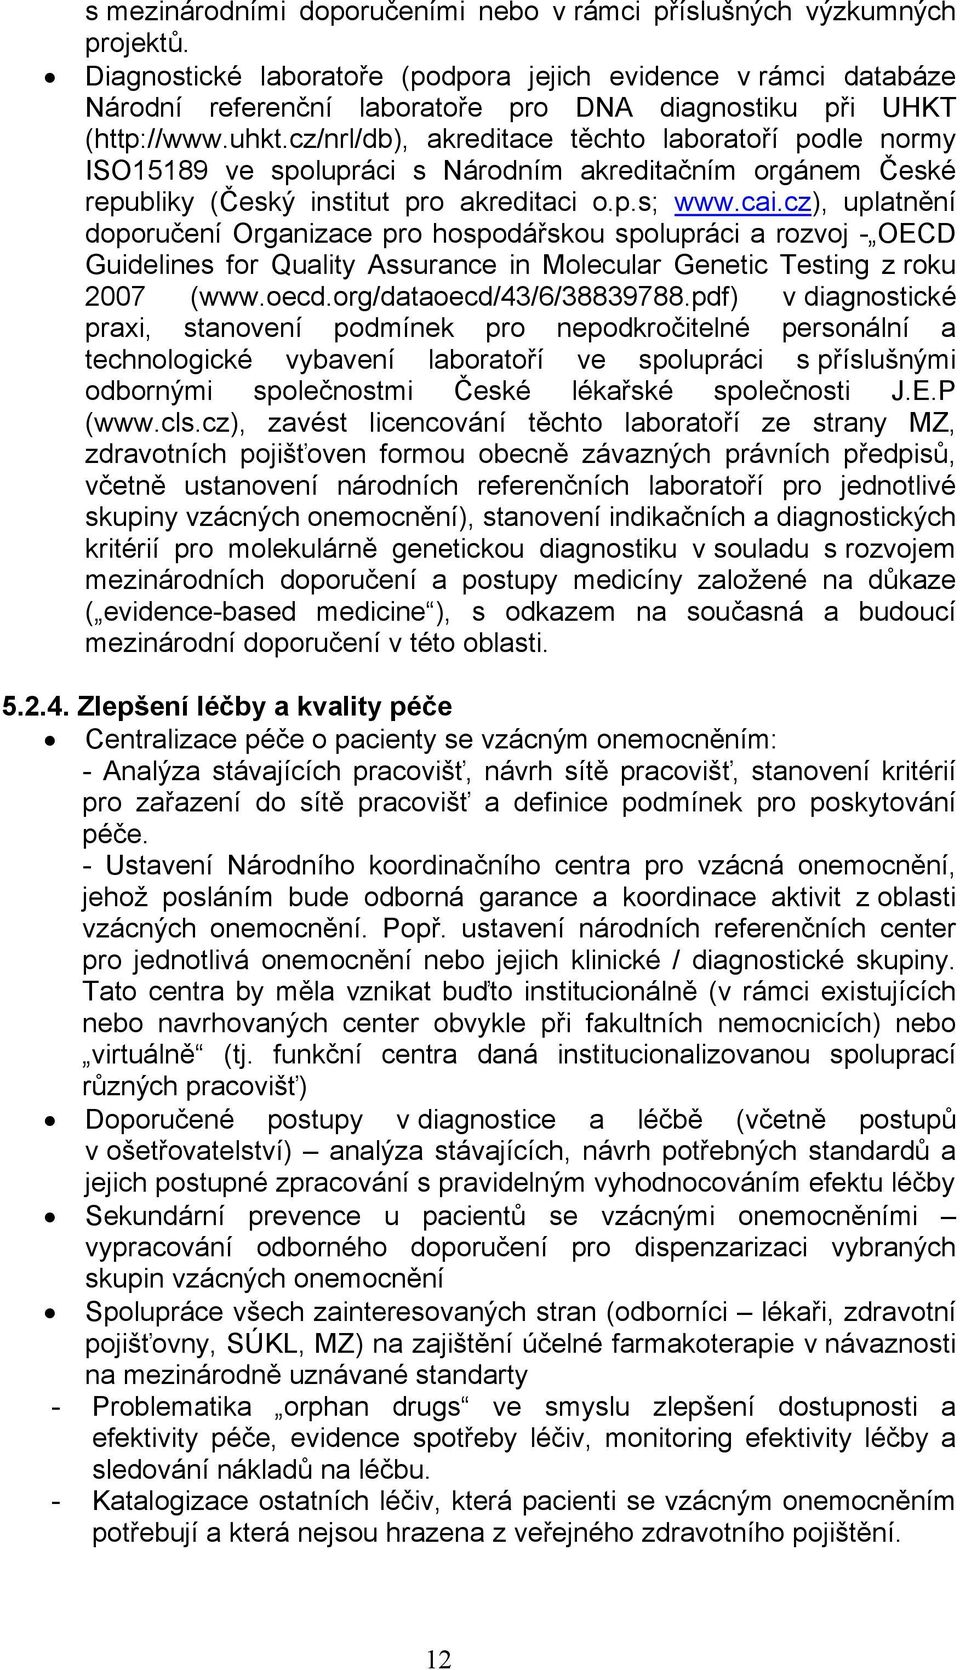 cz/nrl/db), akreditace těchto laboratoří podle normy ISO15189 ve spolupráci s Národním akreditačním orgánem České republiky (Český institut pro akreditaci o.p.s; www.cai.